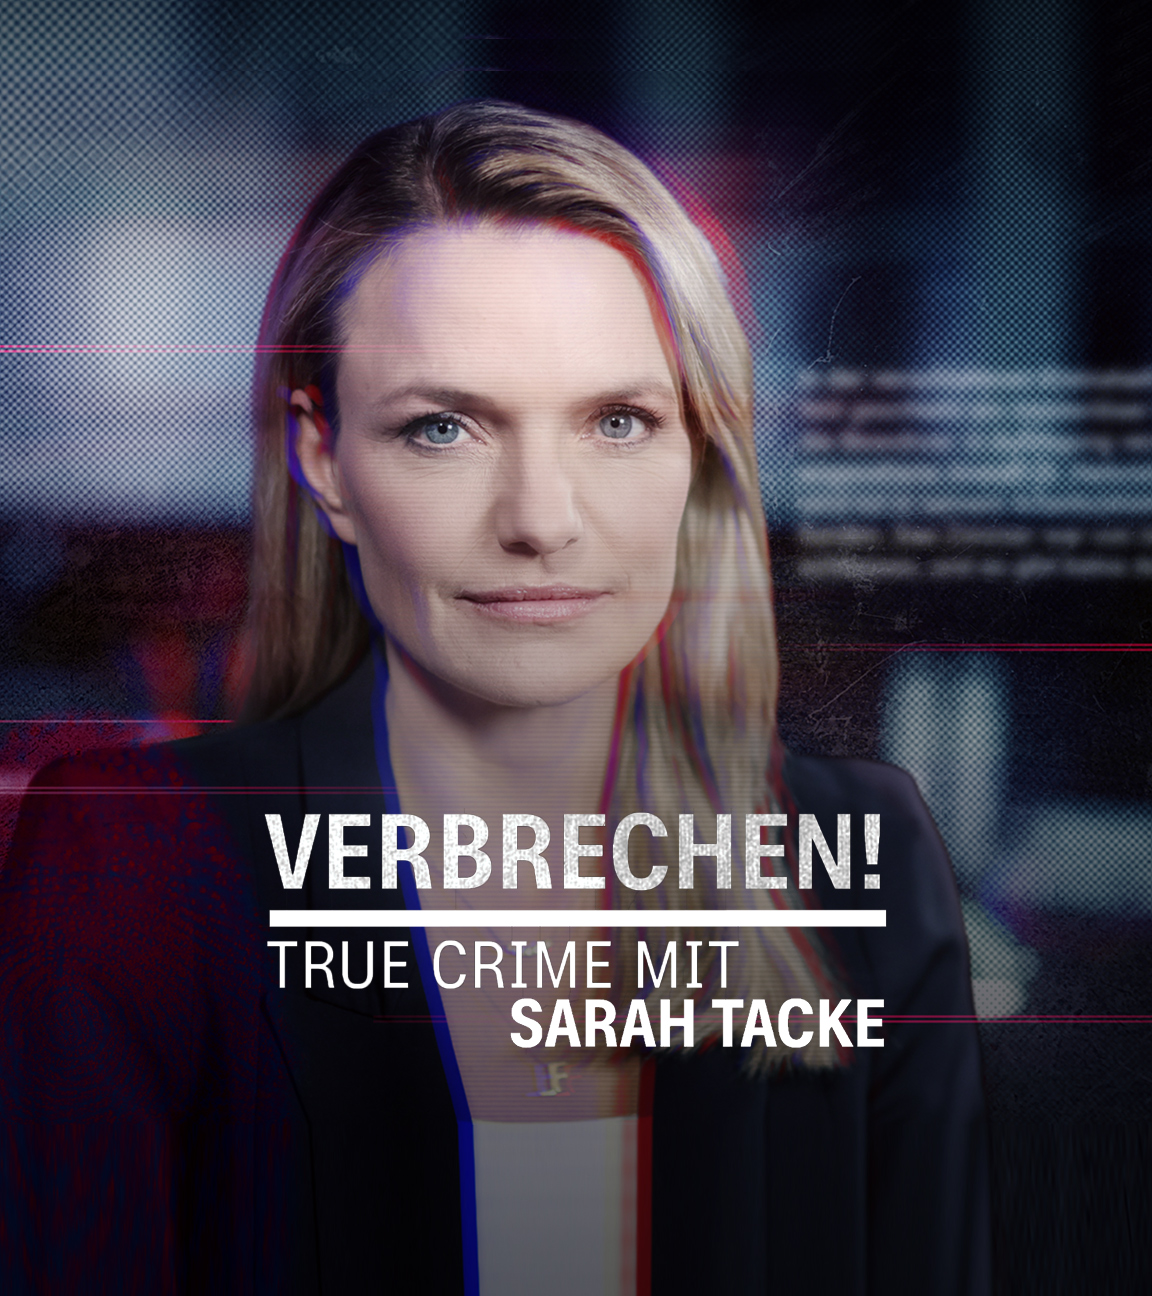 "Verbrechen! True Crime mit Sarah Tacke - Wie ticken Serienkiller?": Montage: Porträt von Sarah Tacke mit einem Insert des Sendungstitels